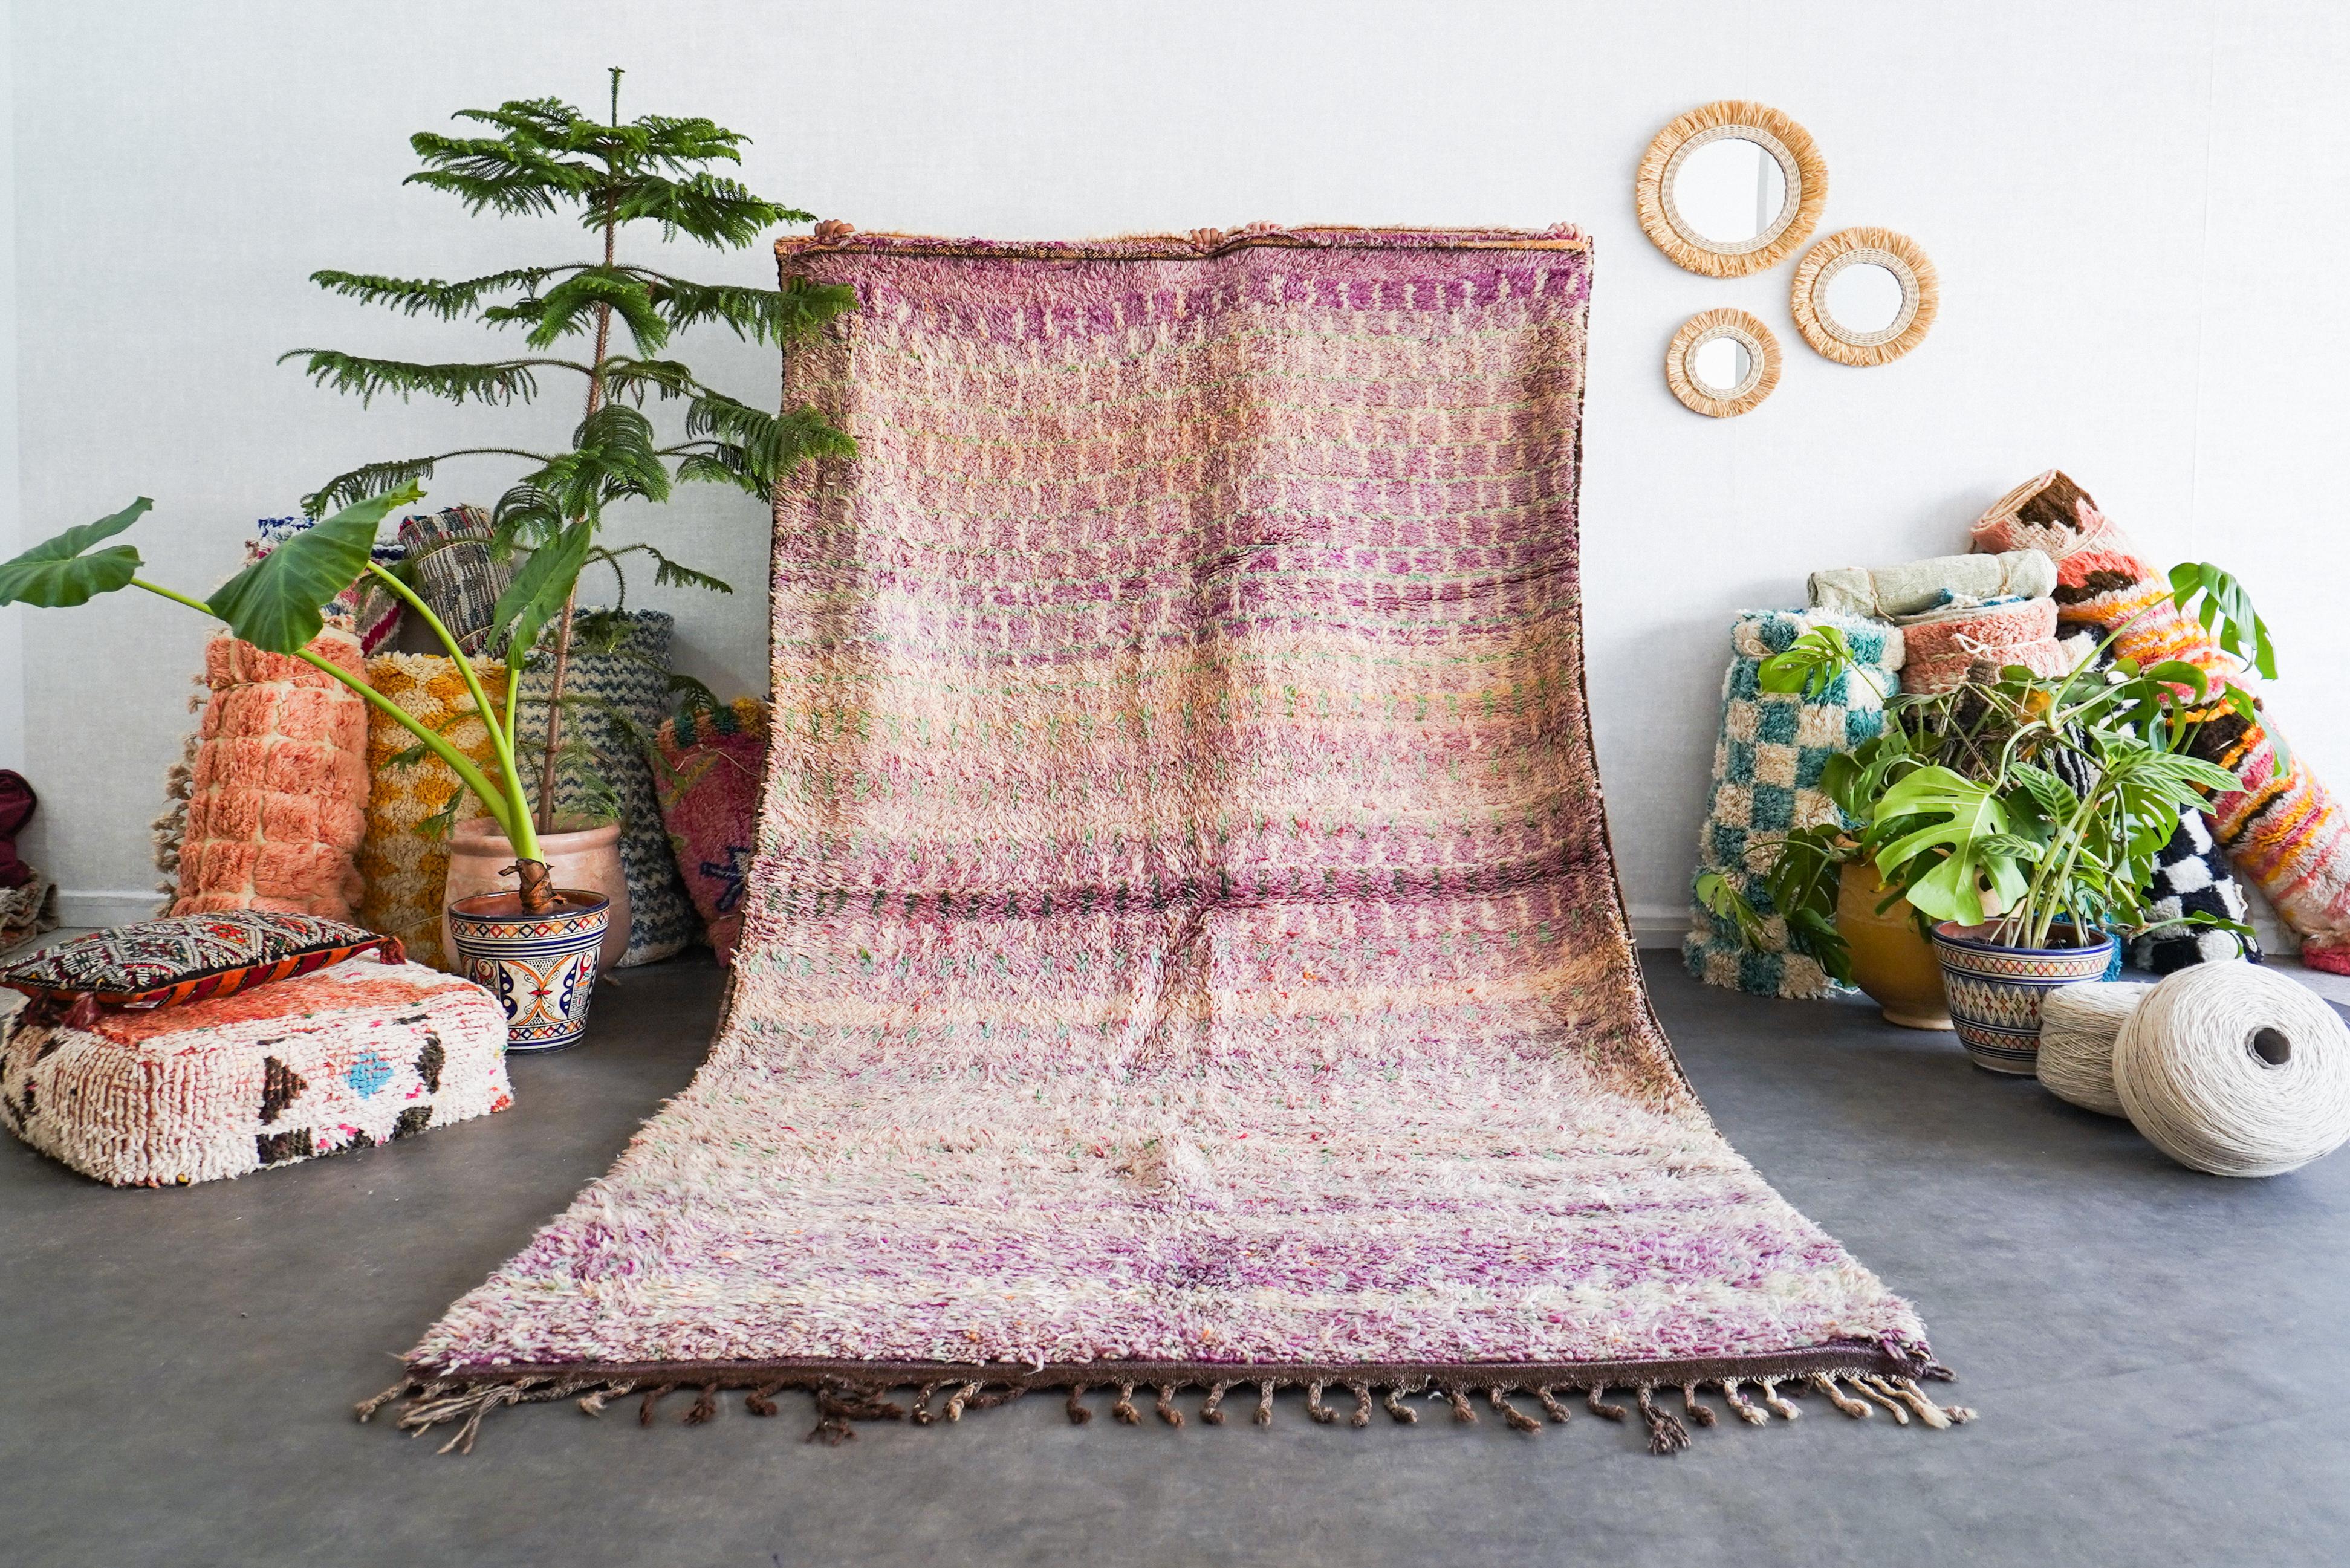 Découvrez le riche héritage tissé dans notre tapis vintage marocain Purple. Fabriqué à la main par des artisans qualifiés selon des techniques éprouvées, chaque tapis berbère est un récit unique qui fait écho à la tapisserie culturelle du Maroc.